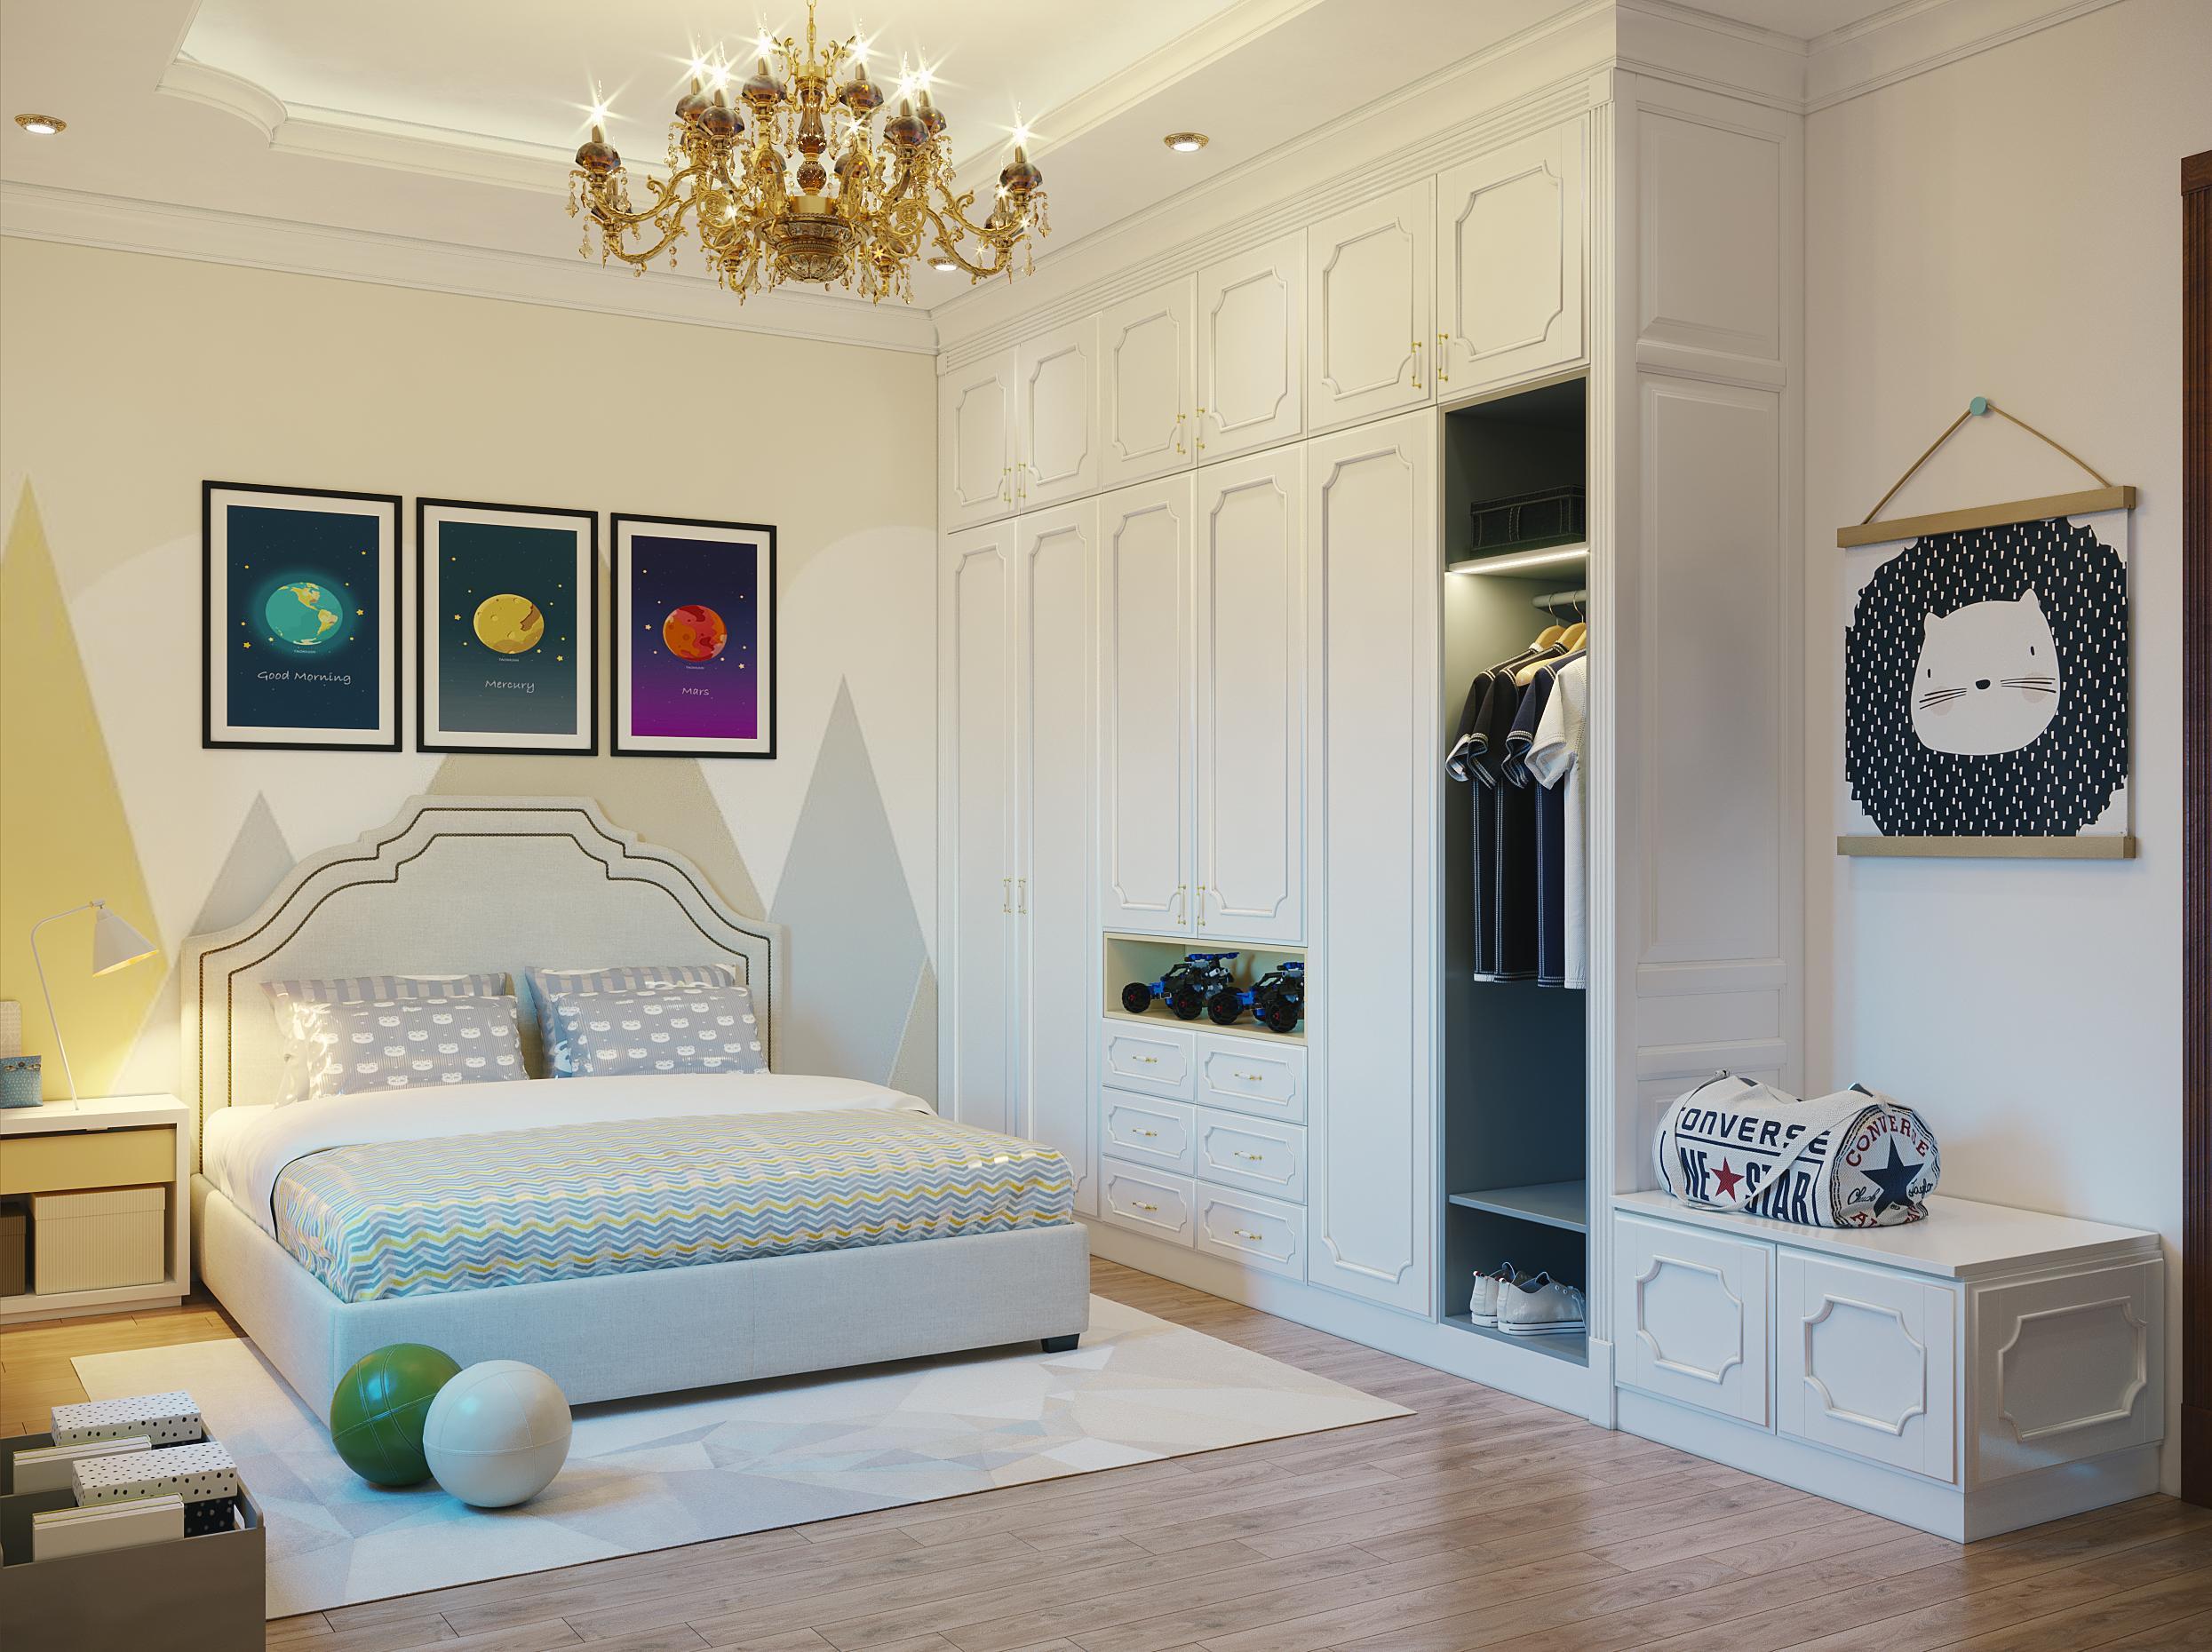 Thiết kế 3 phòng ngủ thoải mái là điều đơn giản cho căn hộ 110m2